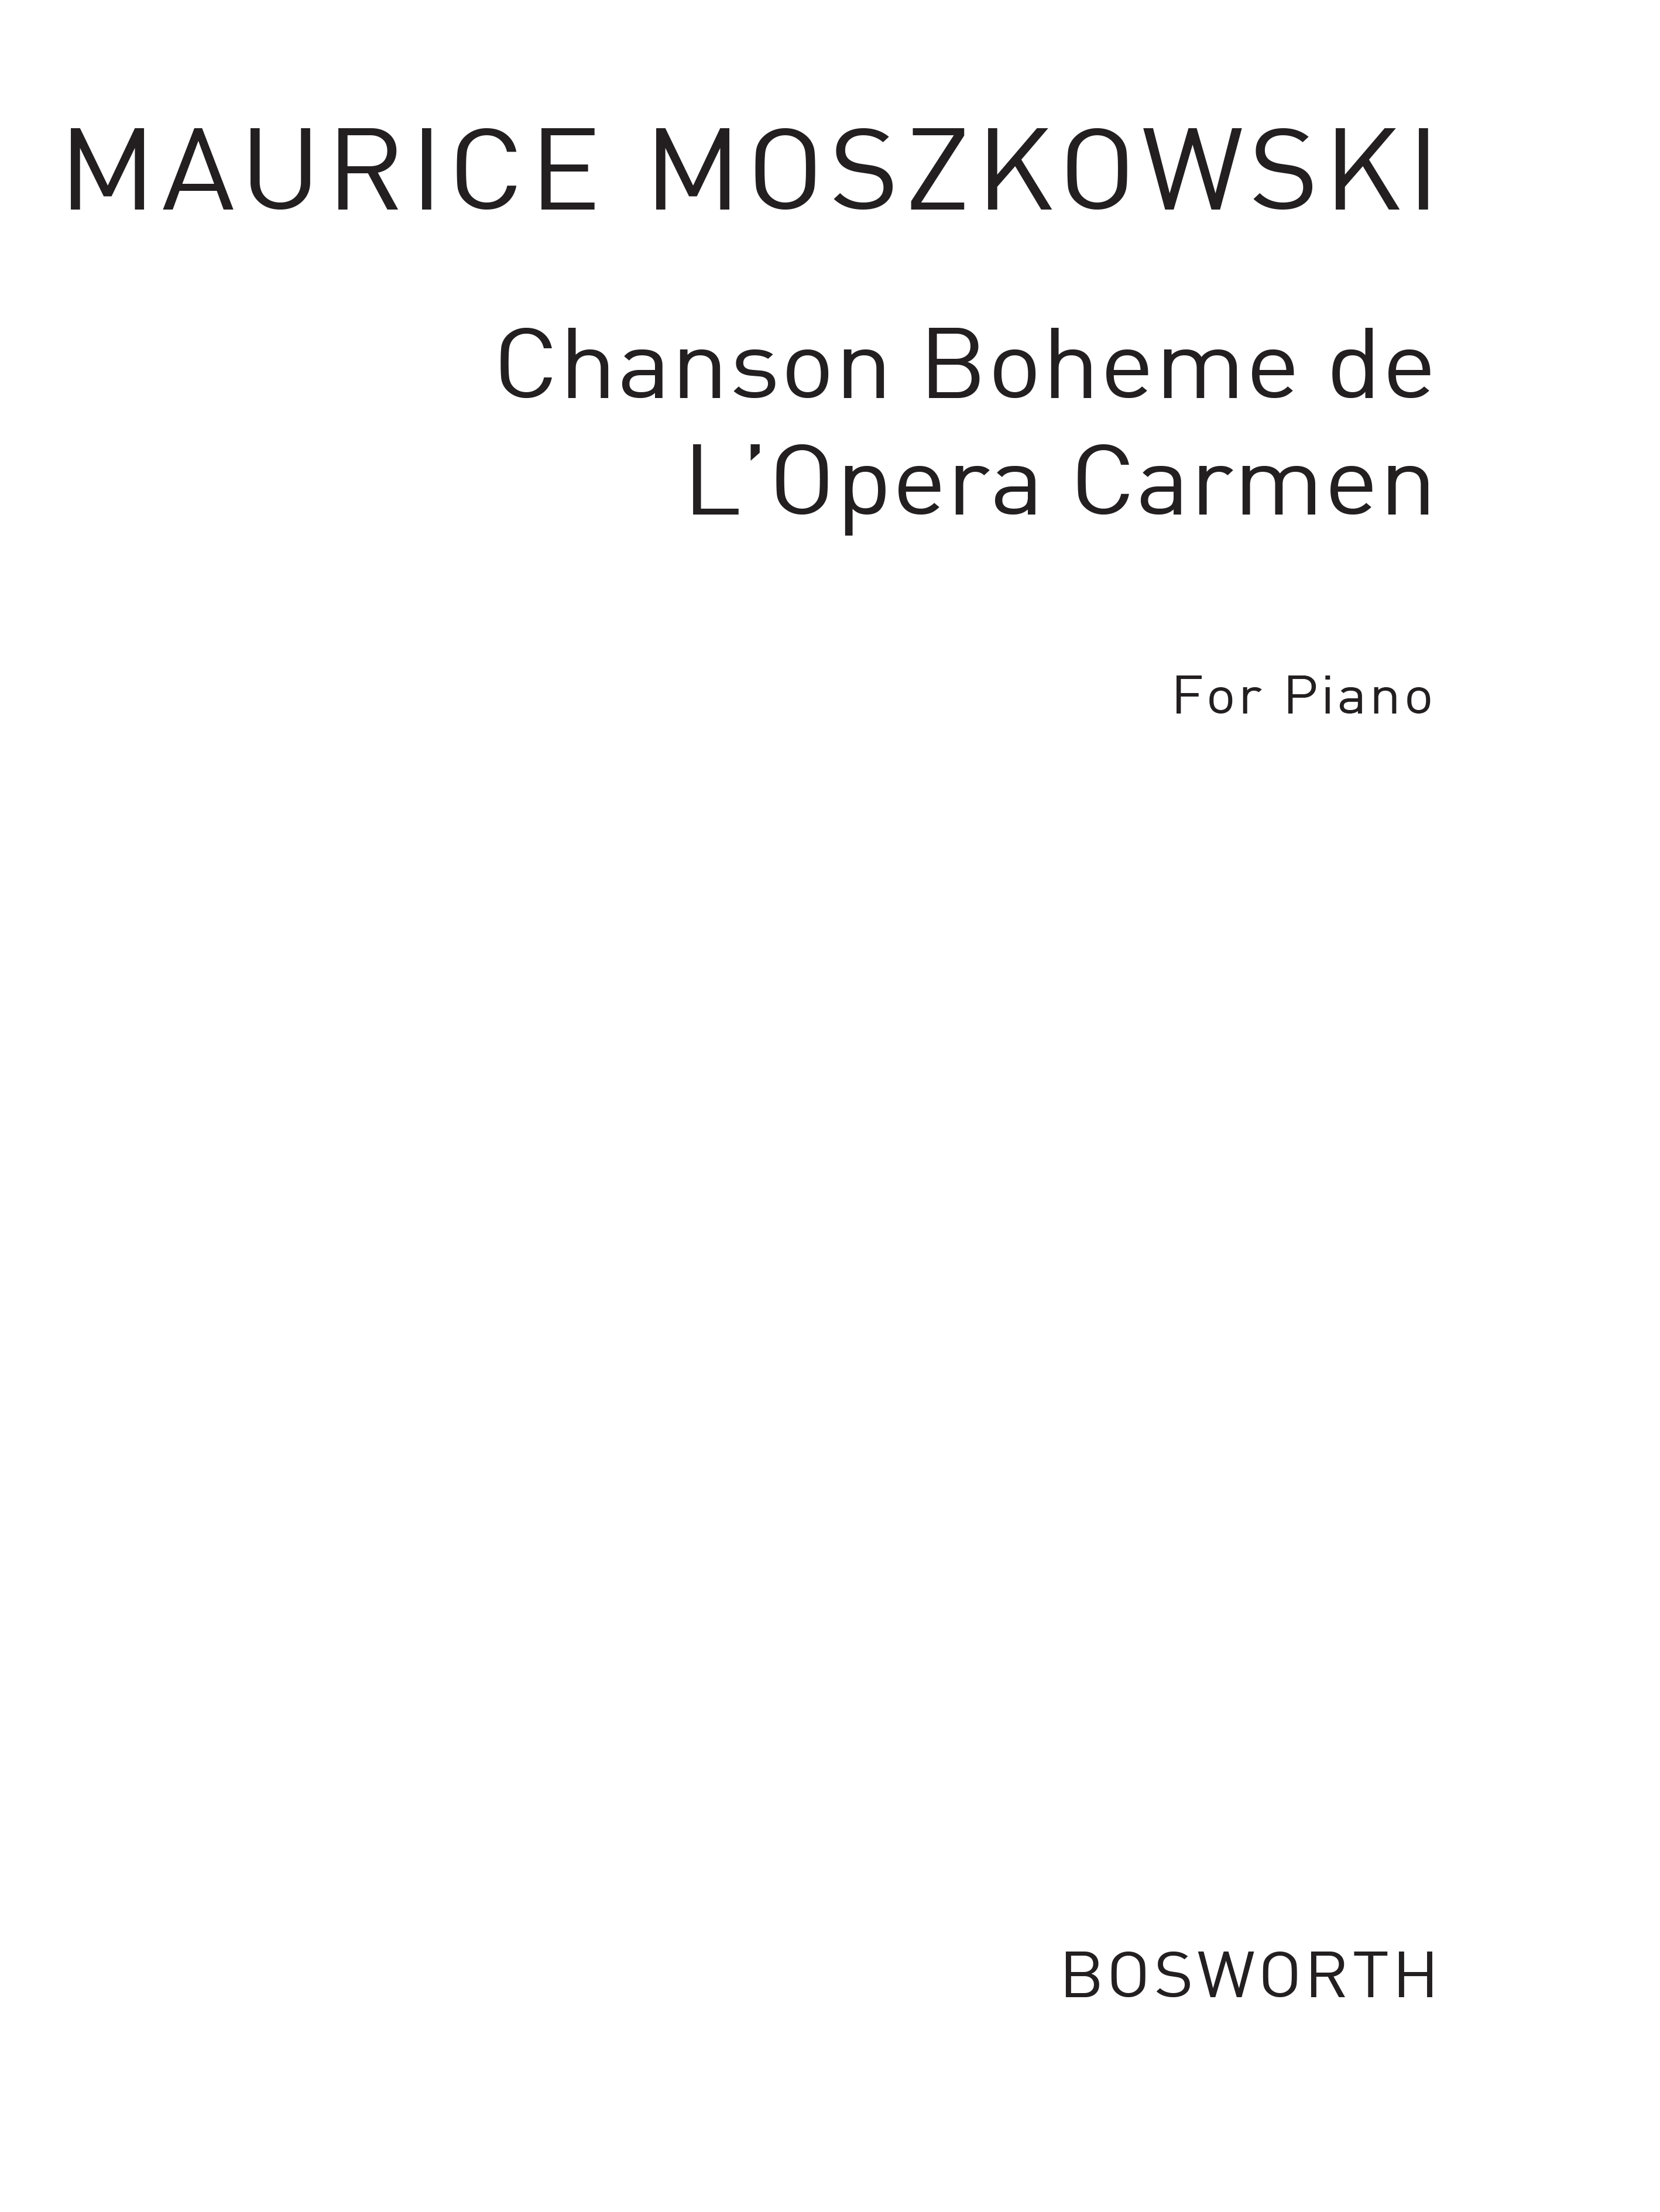 Moszkowski, M Chanson Boheme From Carmen Pf